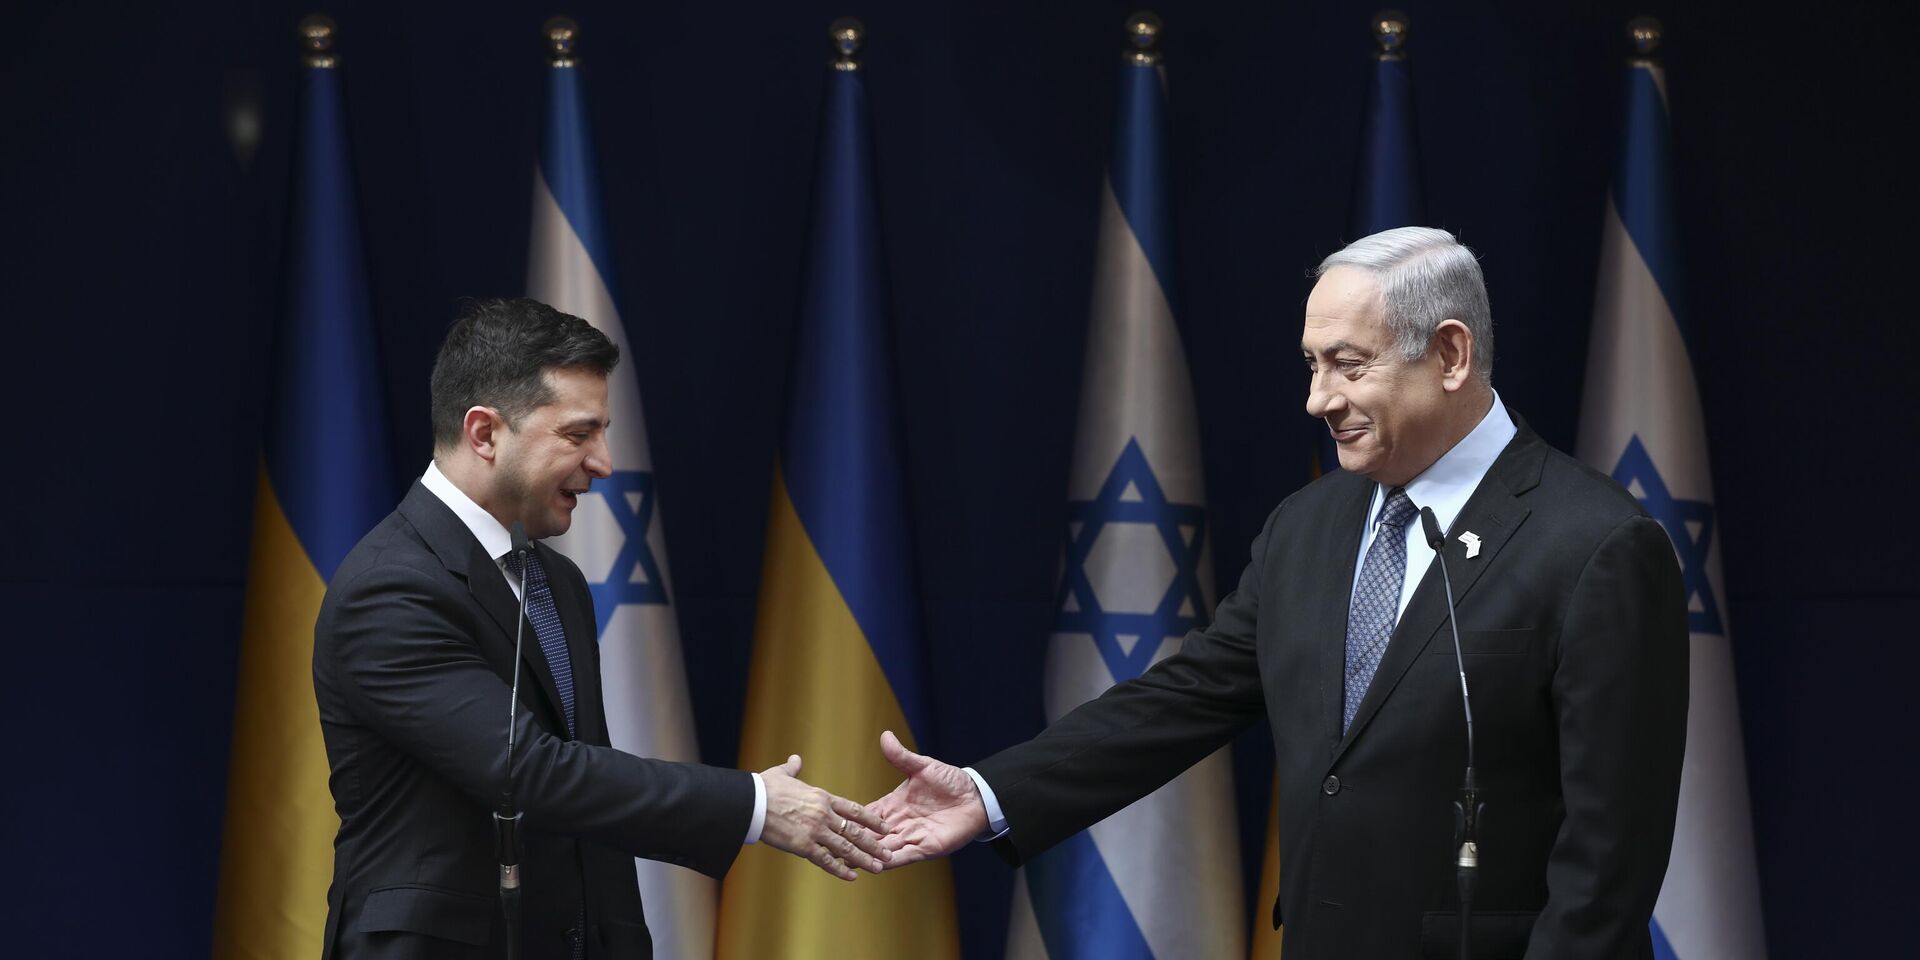 Премьер-министр Израиля Биньямин Нетаньяху (справа) и президент Украины Владимир Зеленский обмениваются рукопожатием во время встречи в Иерусалиме в пятницу, 24 января 2020 г. - ИноСМИ, 1920, 19.11.2023